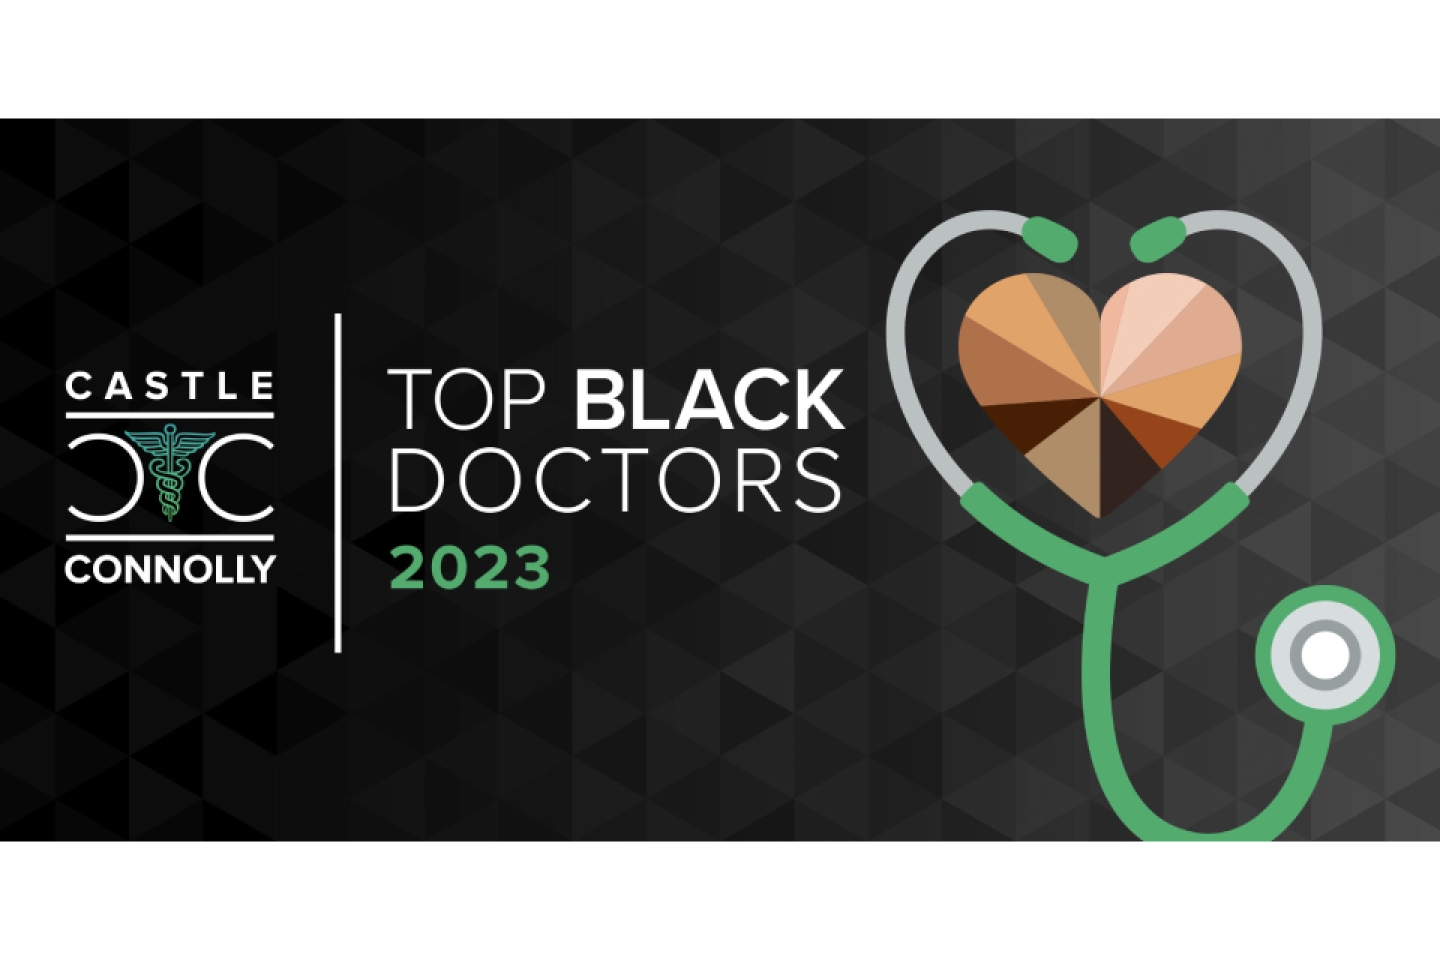 Top Black Doctors 2023